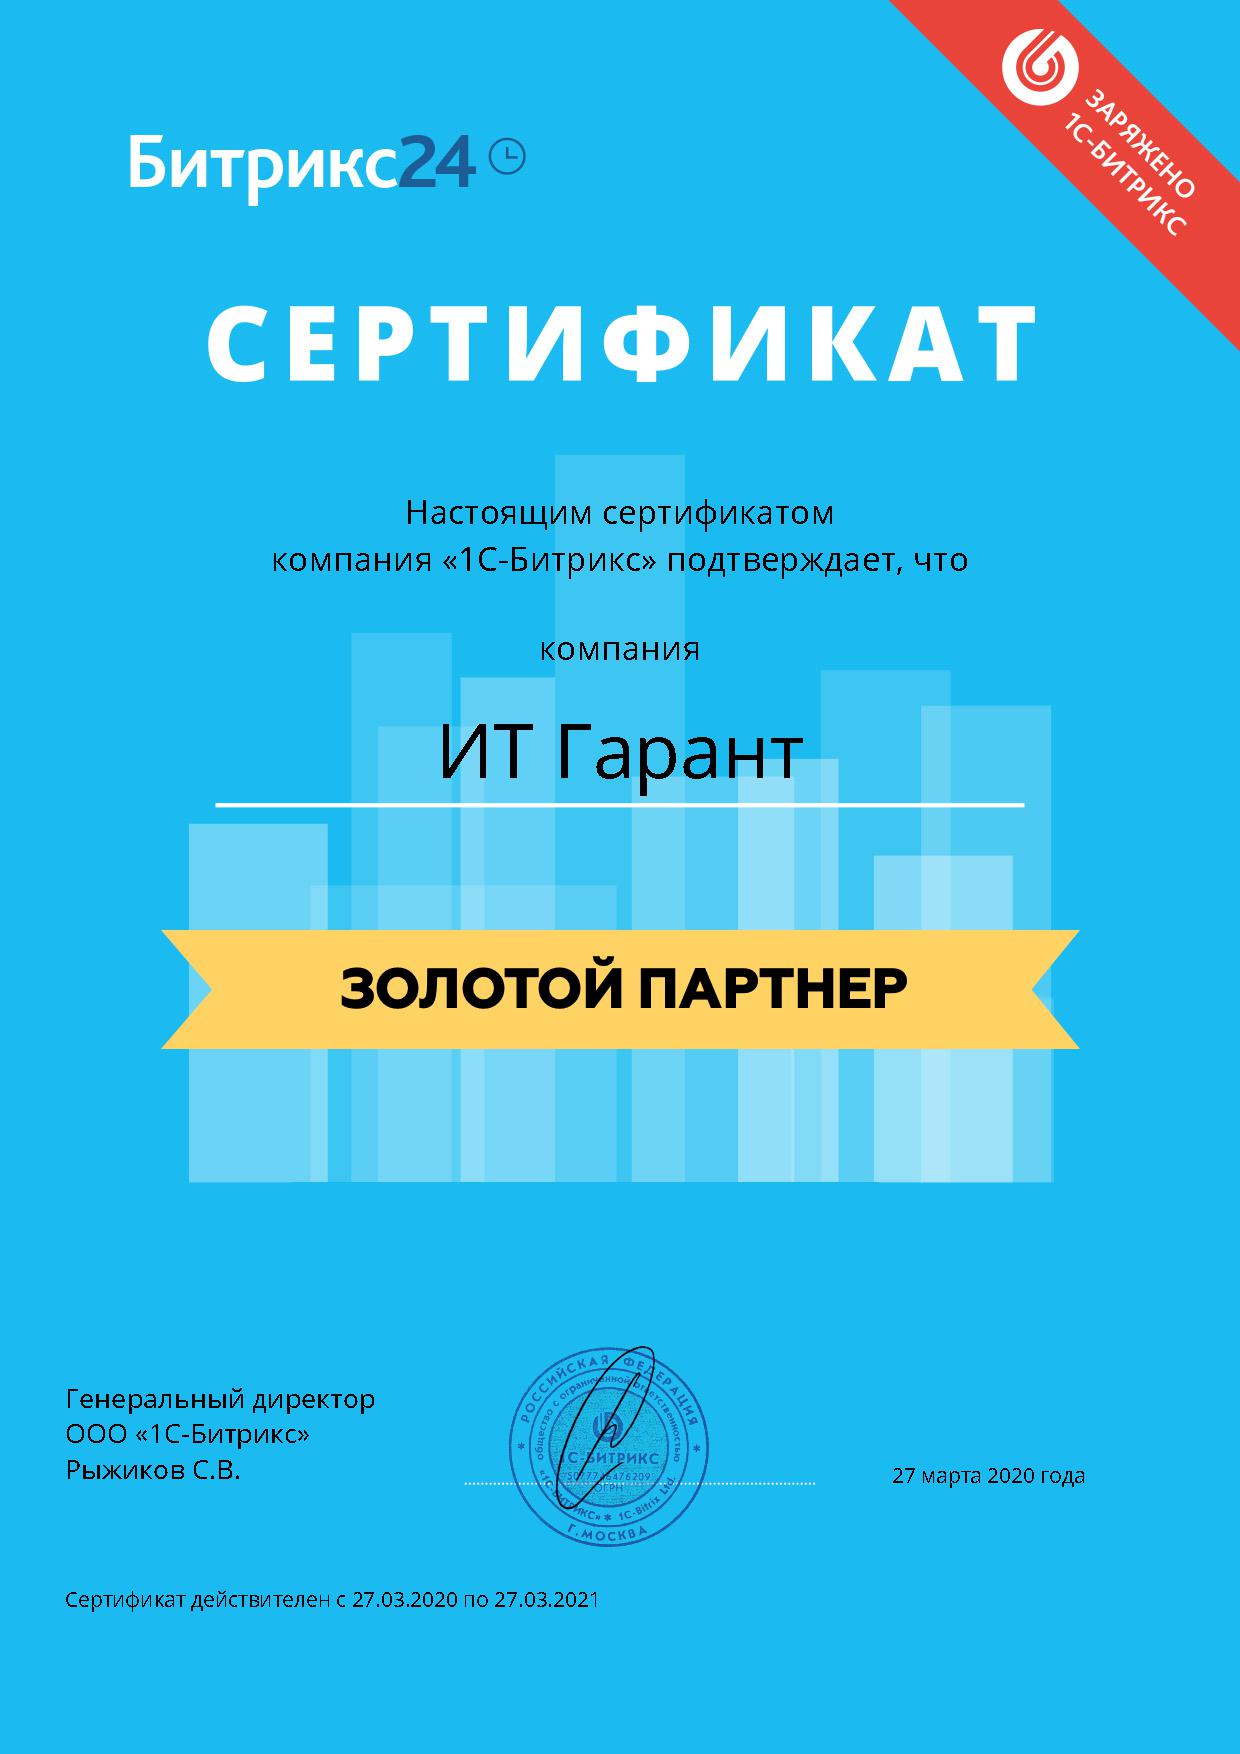 Сертификат золотой партнер Битрикс 24